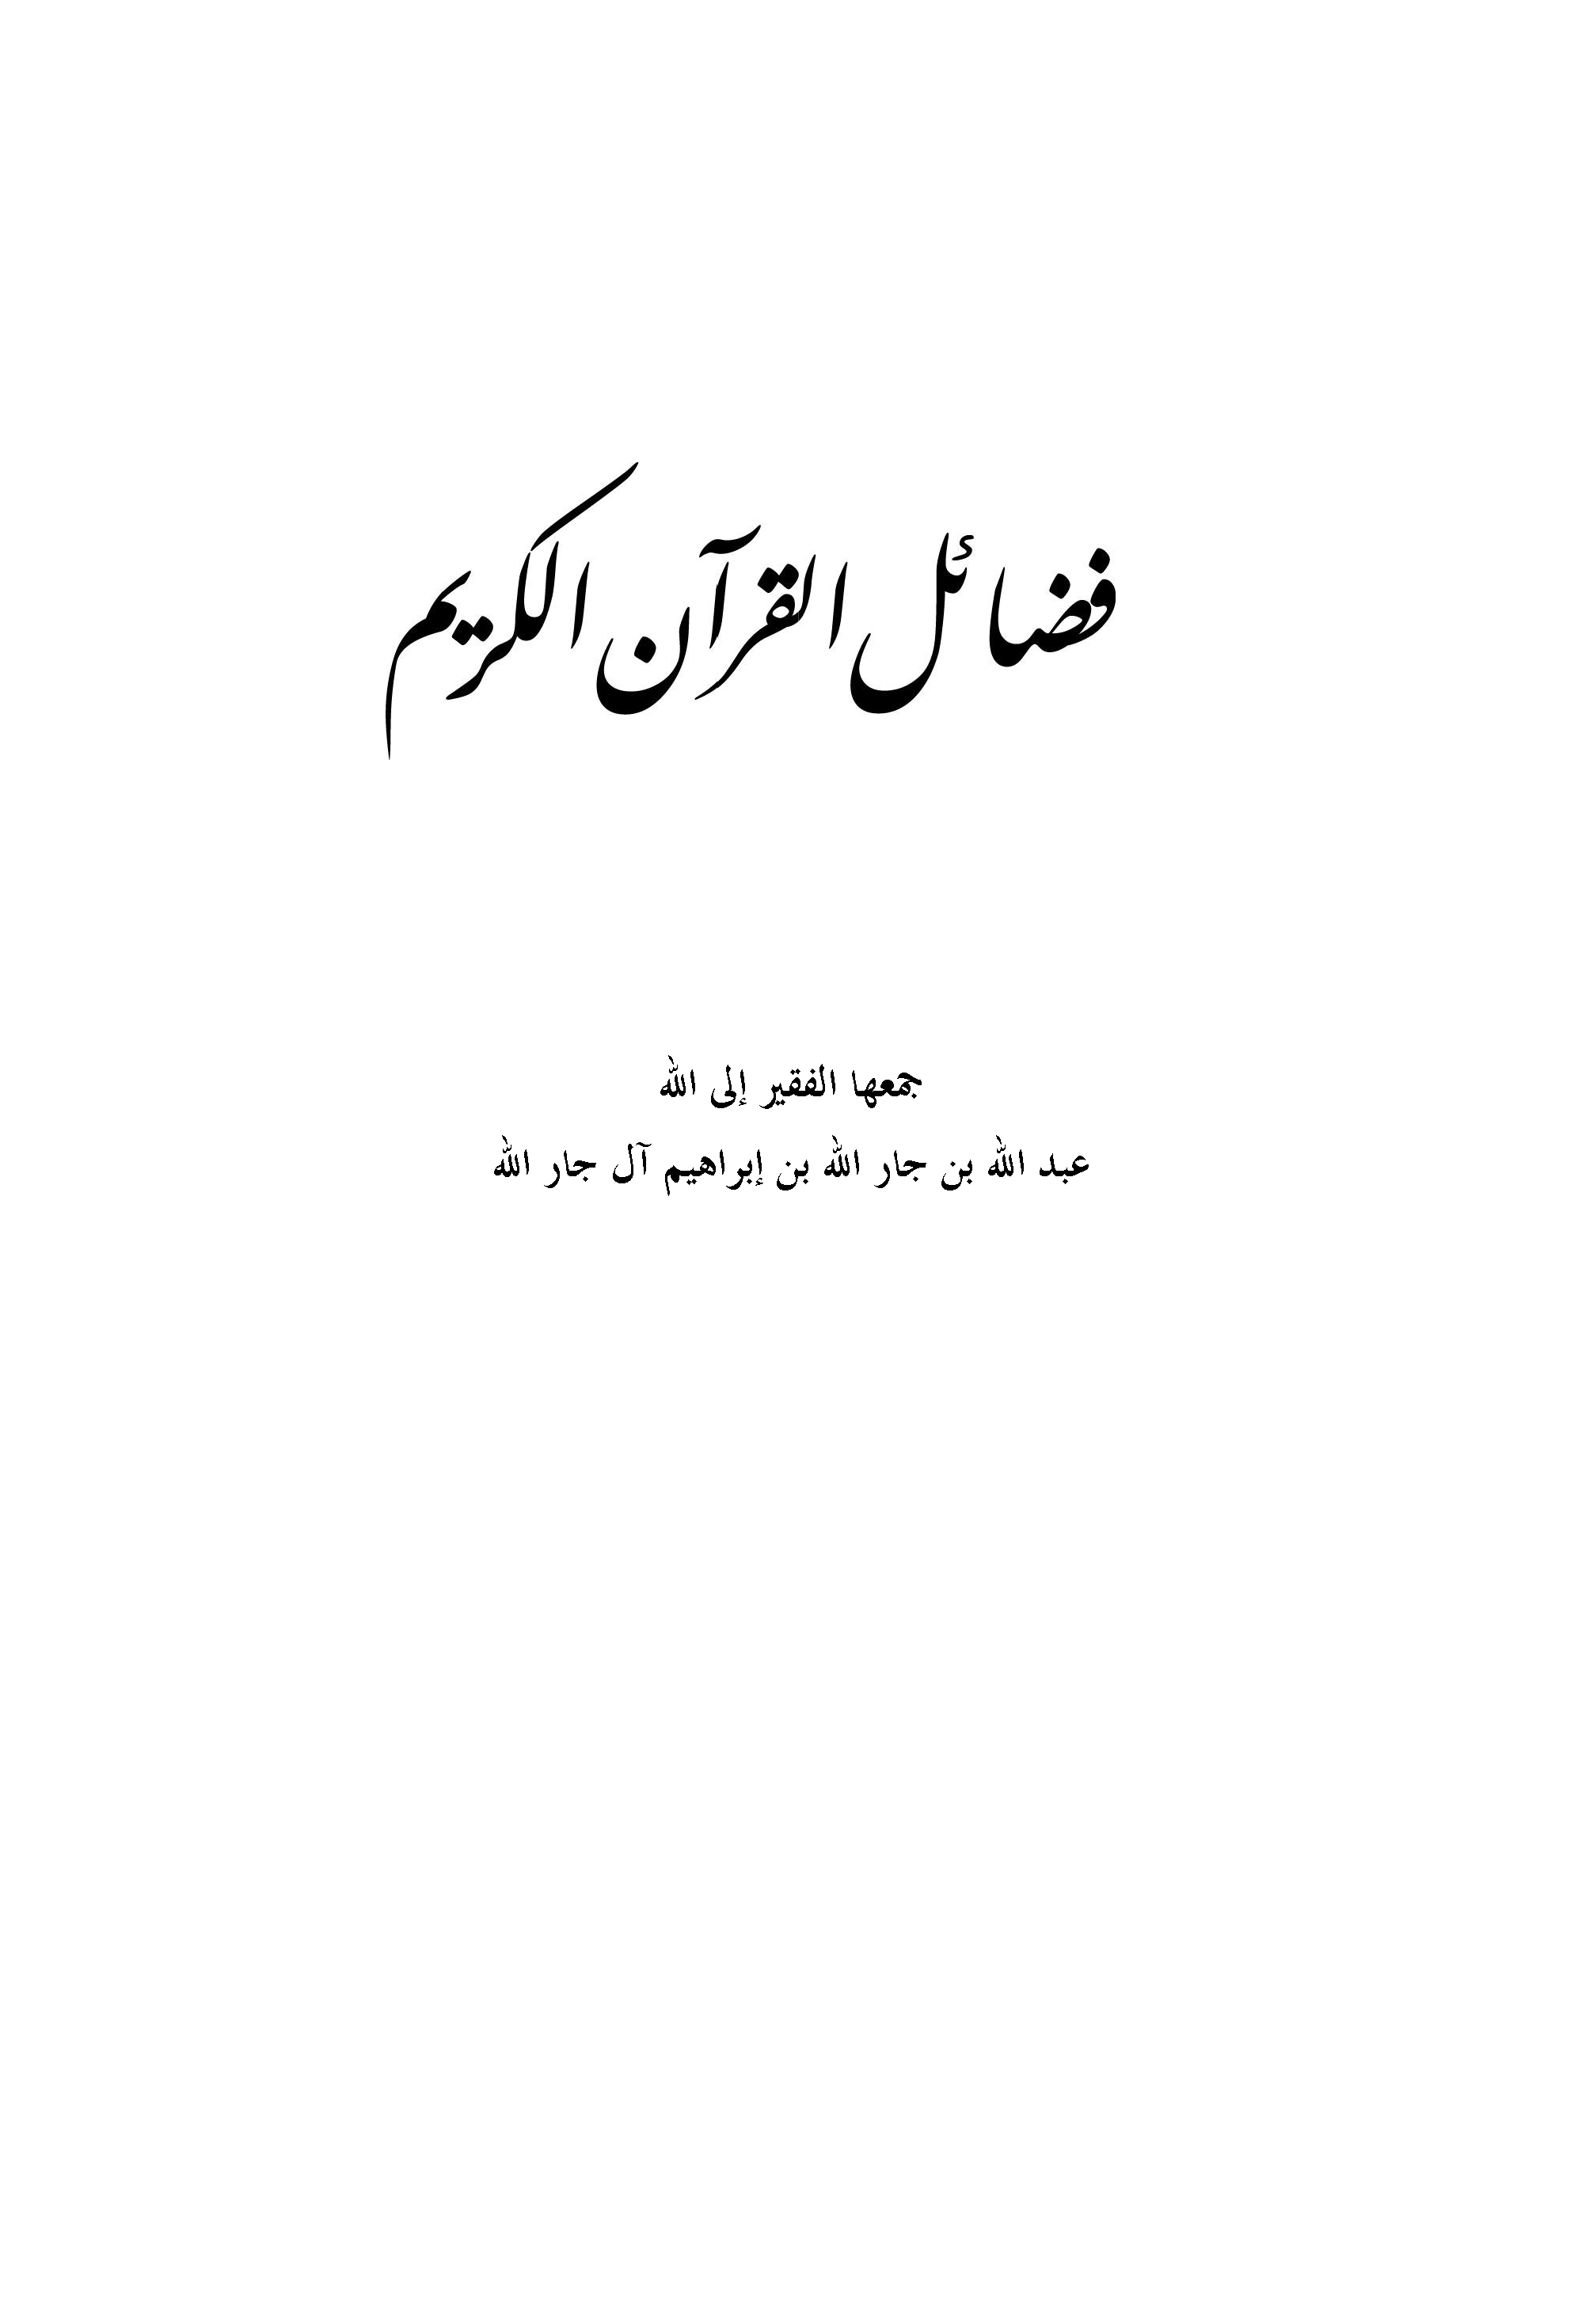 تحميل كتاب فضائل القرآن - عبد الله جار الله لـِ: الشيخ عبد الله بن جار الله بن إبراهيم آل جار الله (ت 1414)